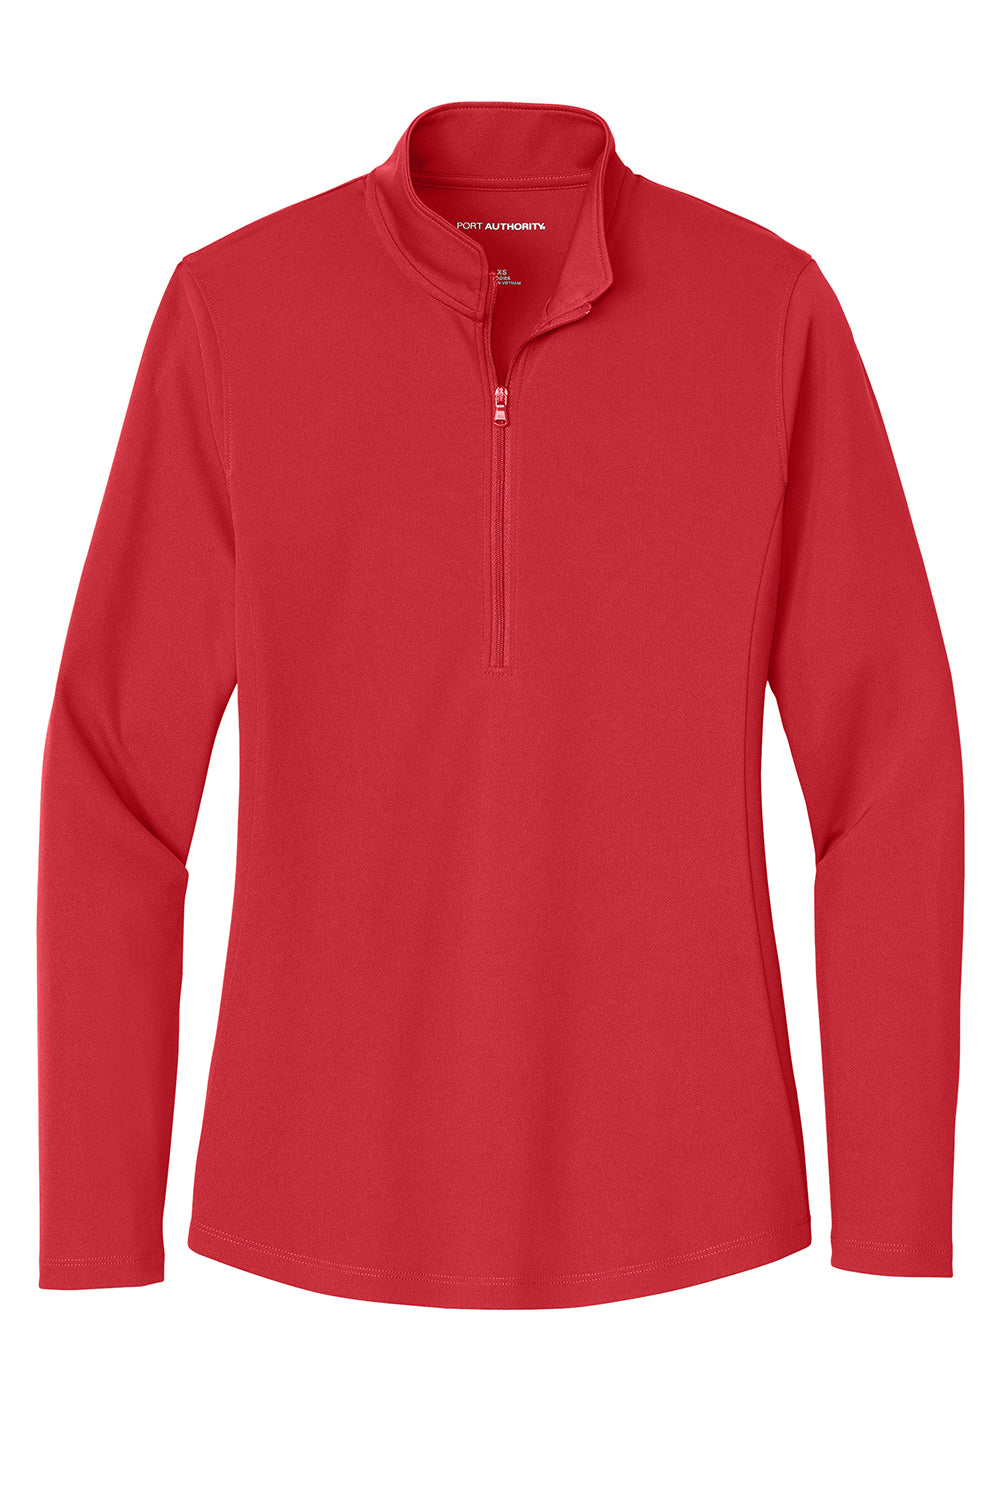 Port Authority LK112 Womens Dry Zone UV Micro Mesh 1/4 Zip Sweatshirt Rich Red Flat Front